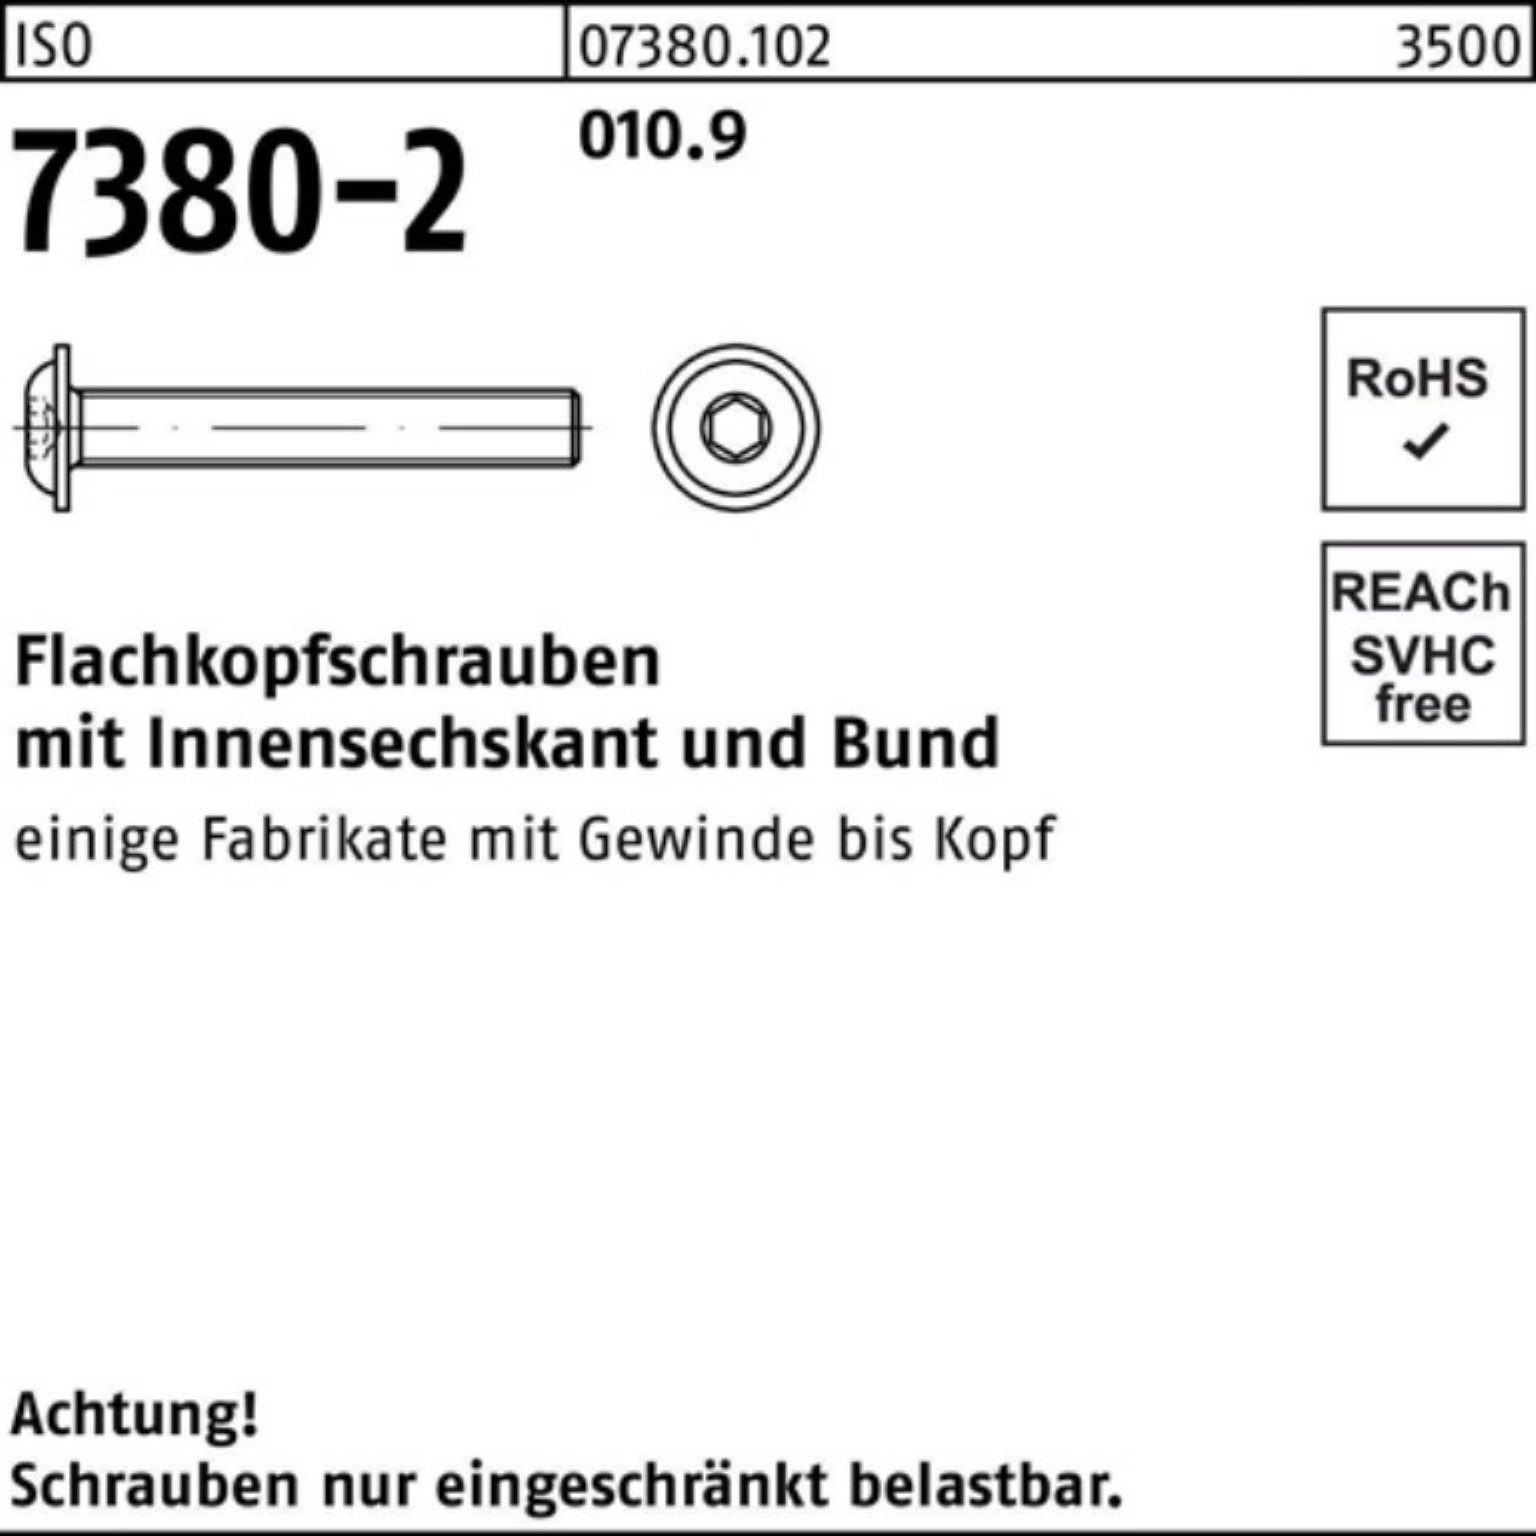 30 Reyher 7380-2 Flachkopfschraube 20 010.9 Pack 200er Bund/Innen-6kt ISO M8x Schraube